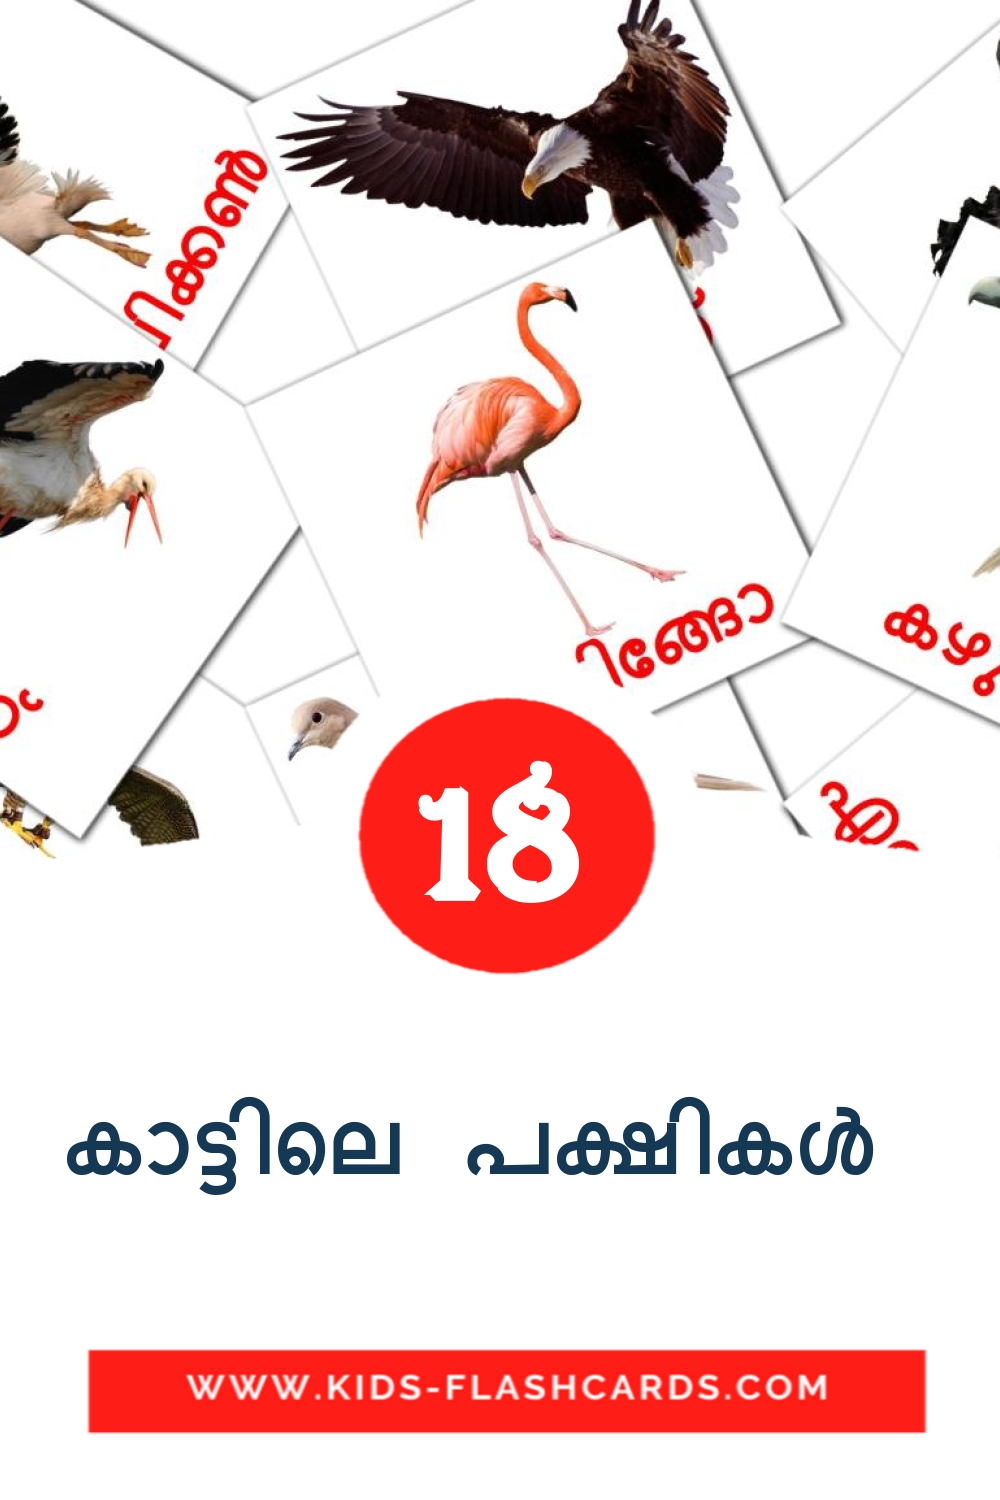 18 tarjetas didacticas de കാട്ടിലെ പക്ഷികൾ  para el jardín de infancia en malayalam